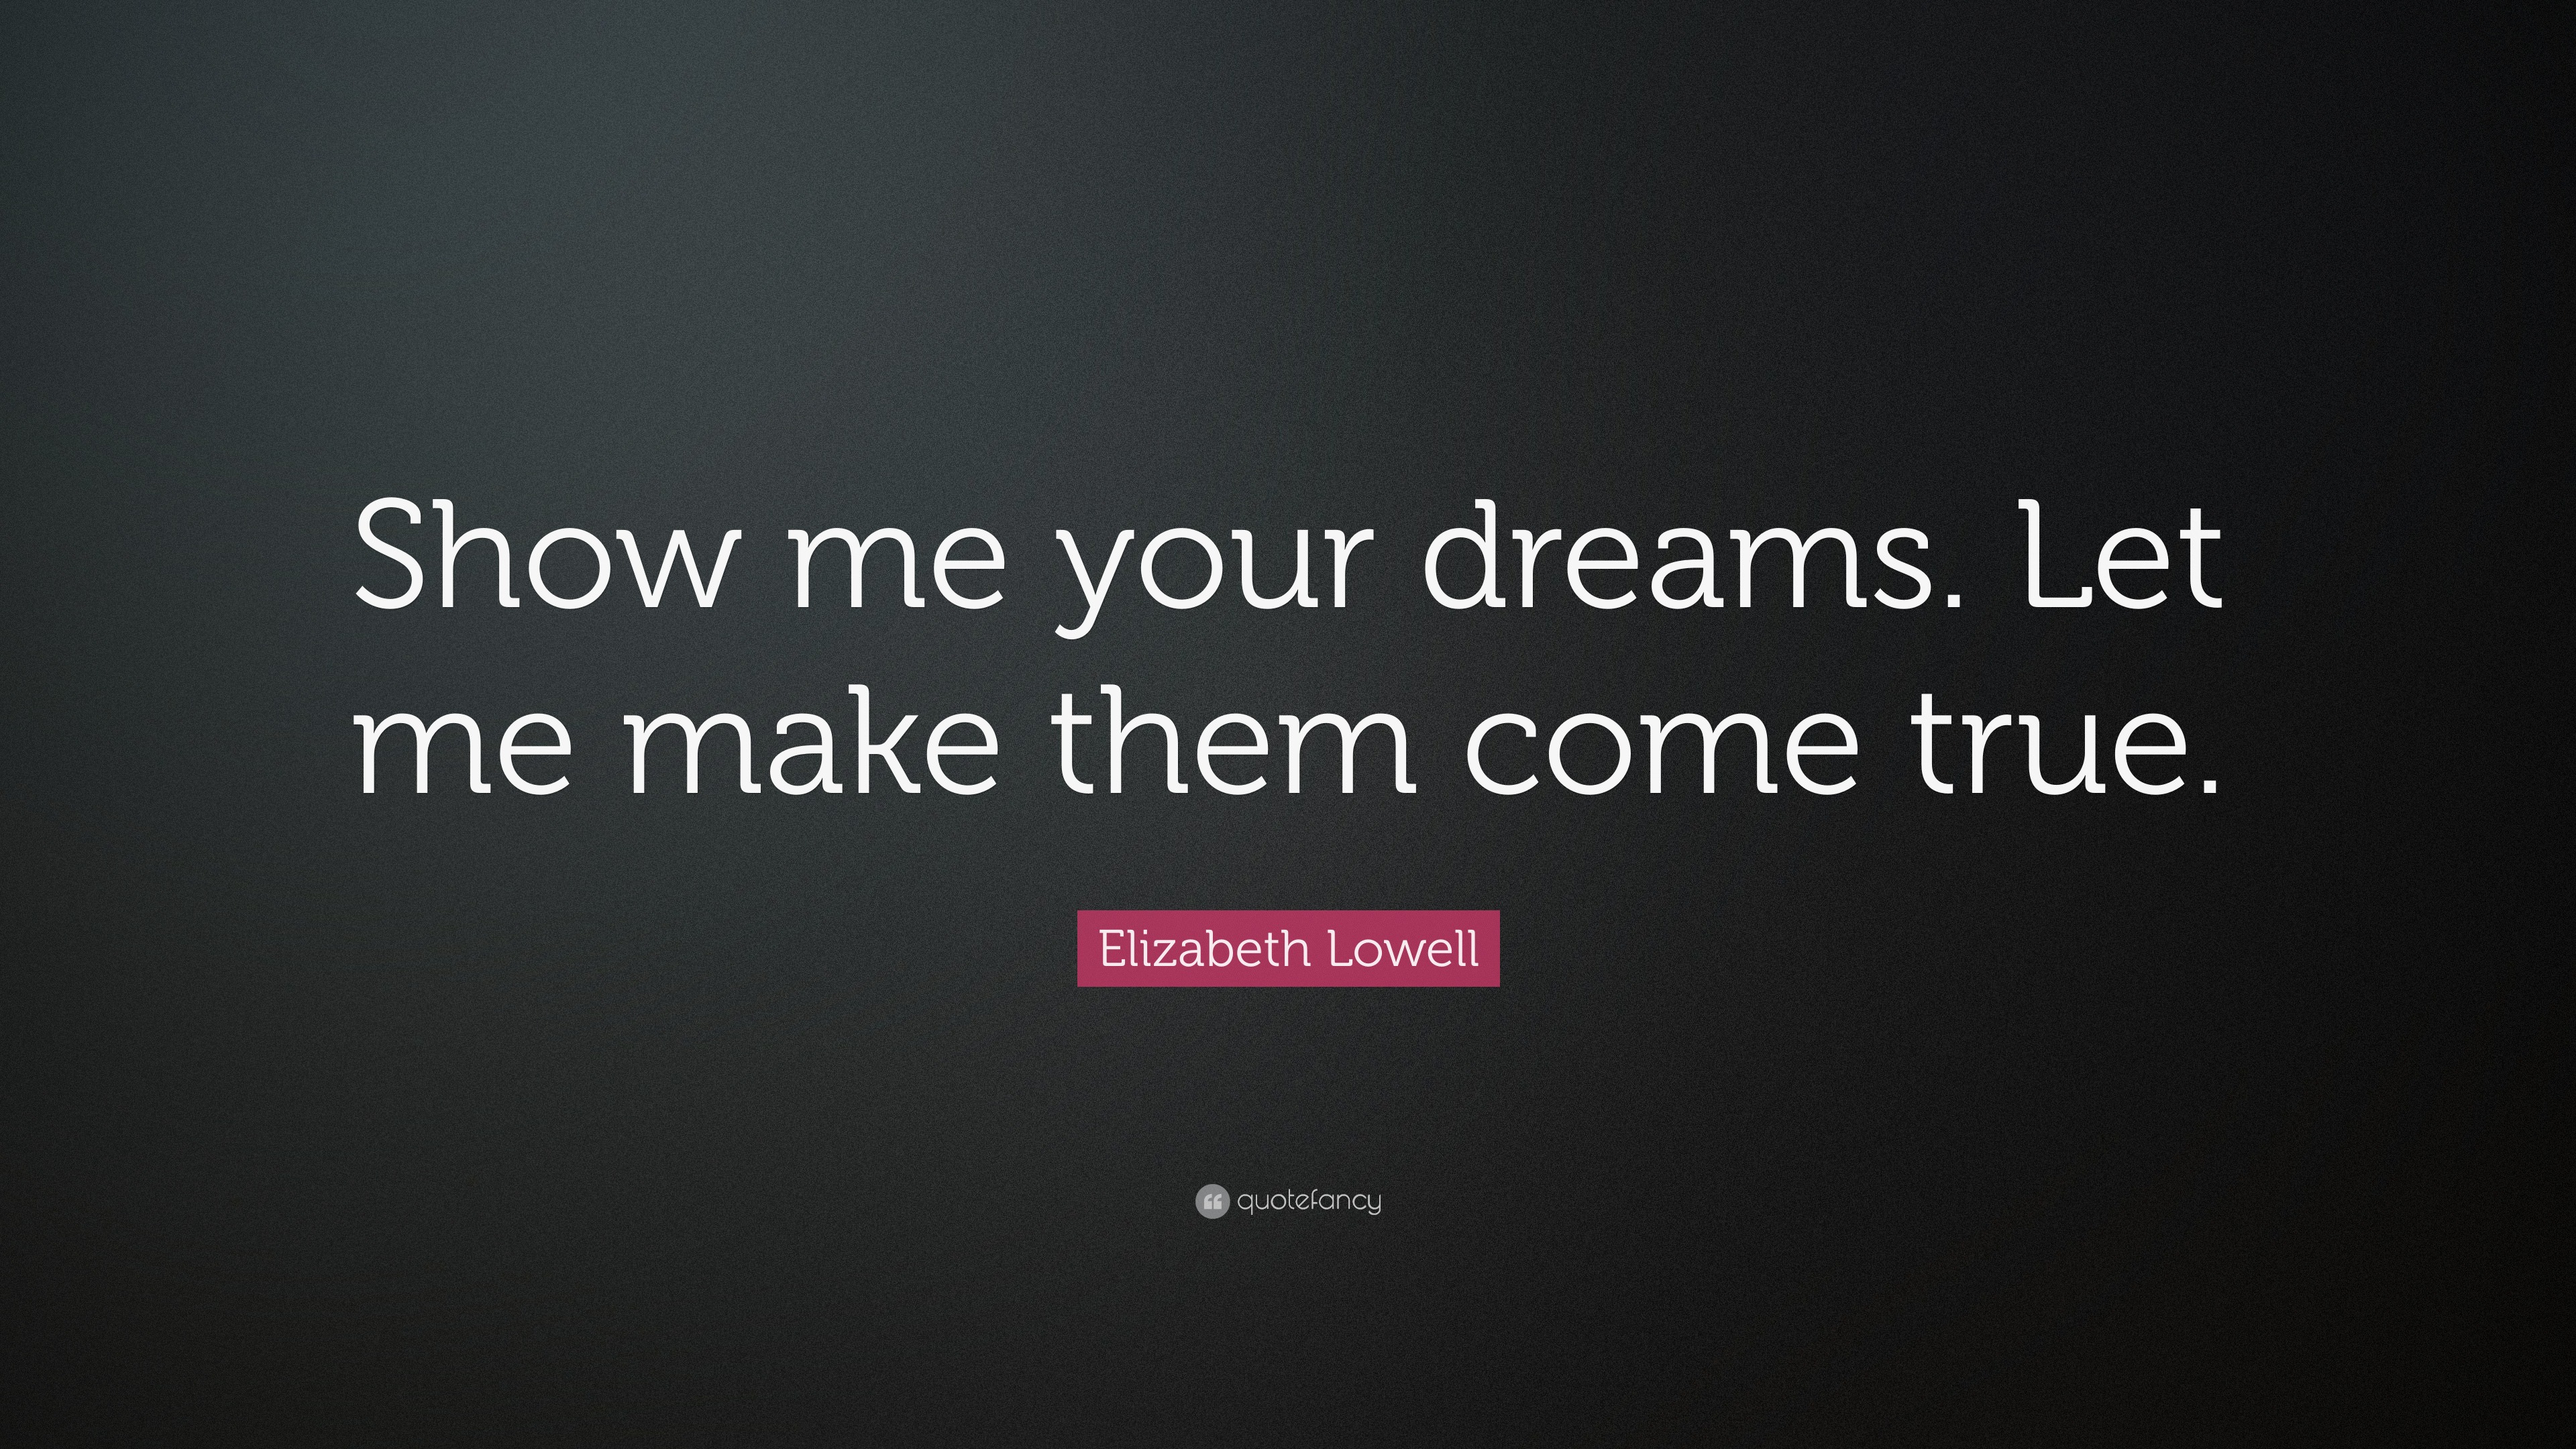 Elizabeth Lowell Quote: "Show me your dreams. Let me make them come true."